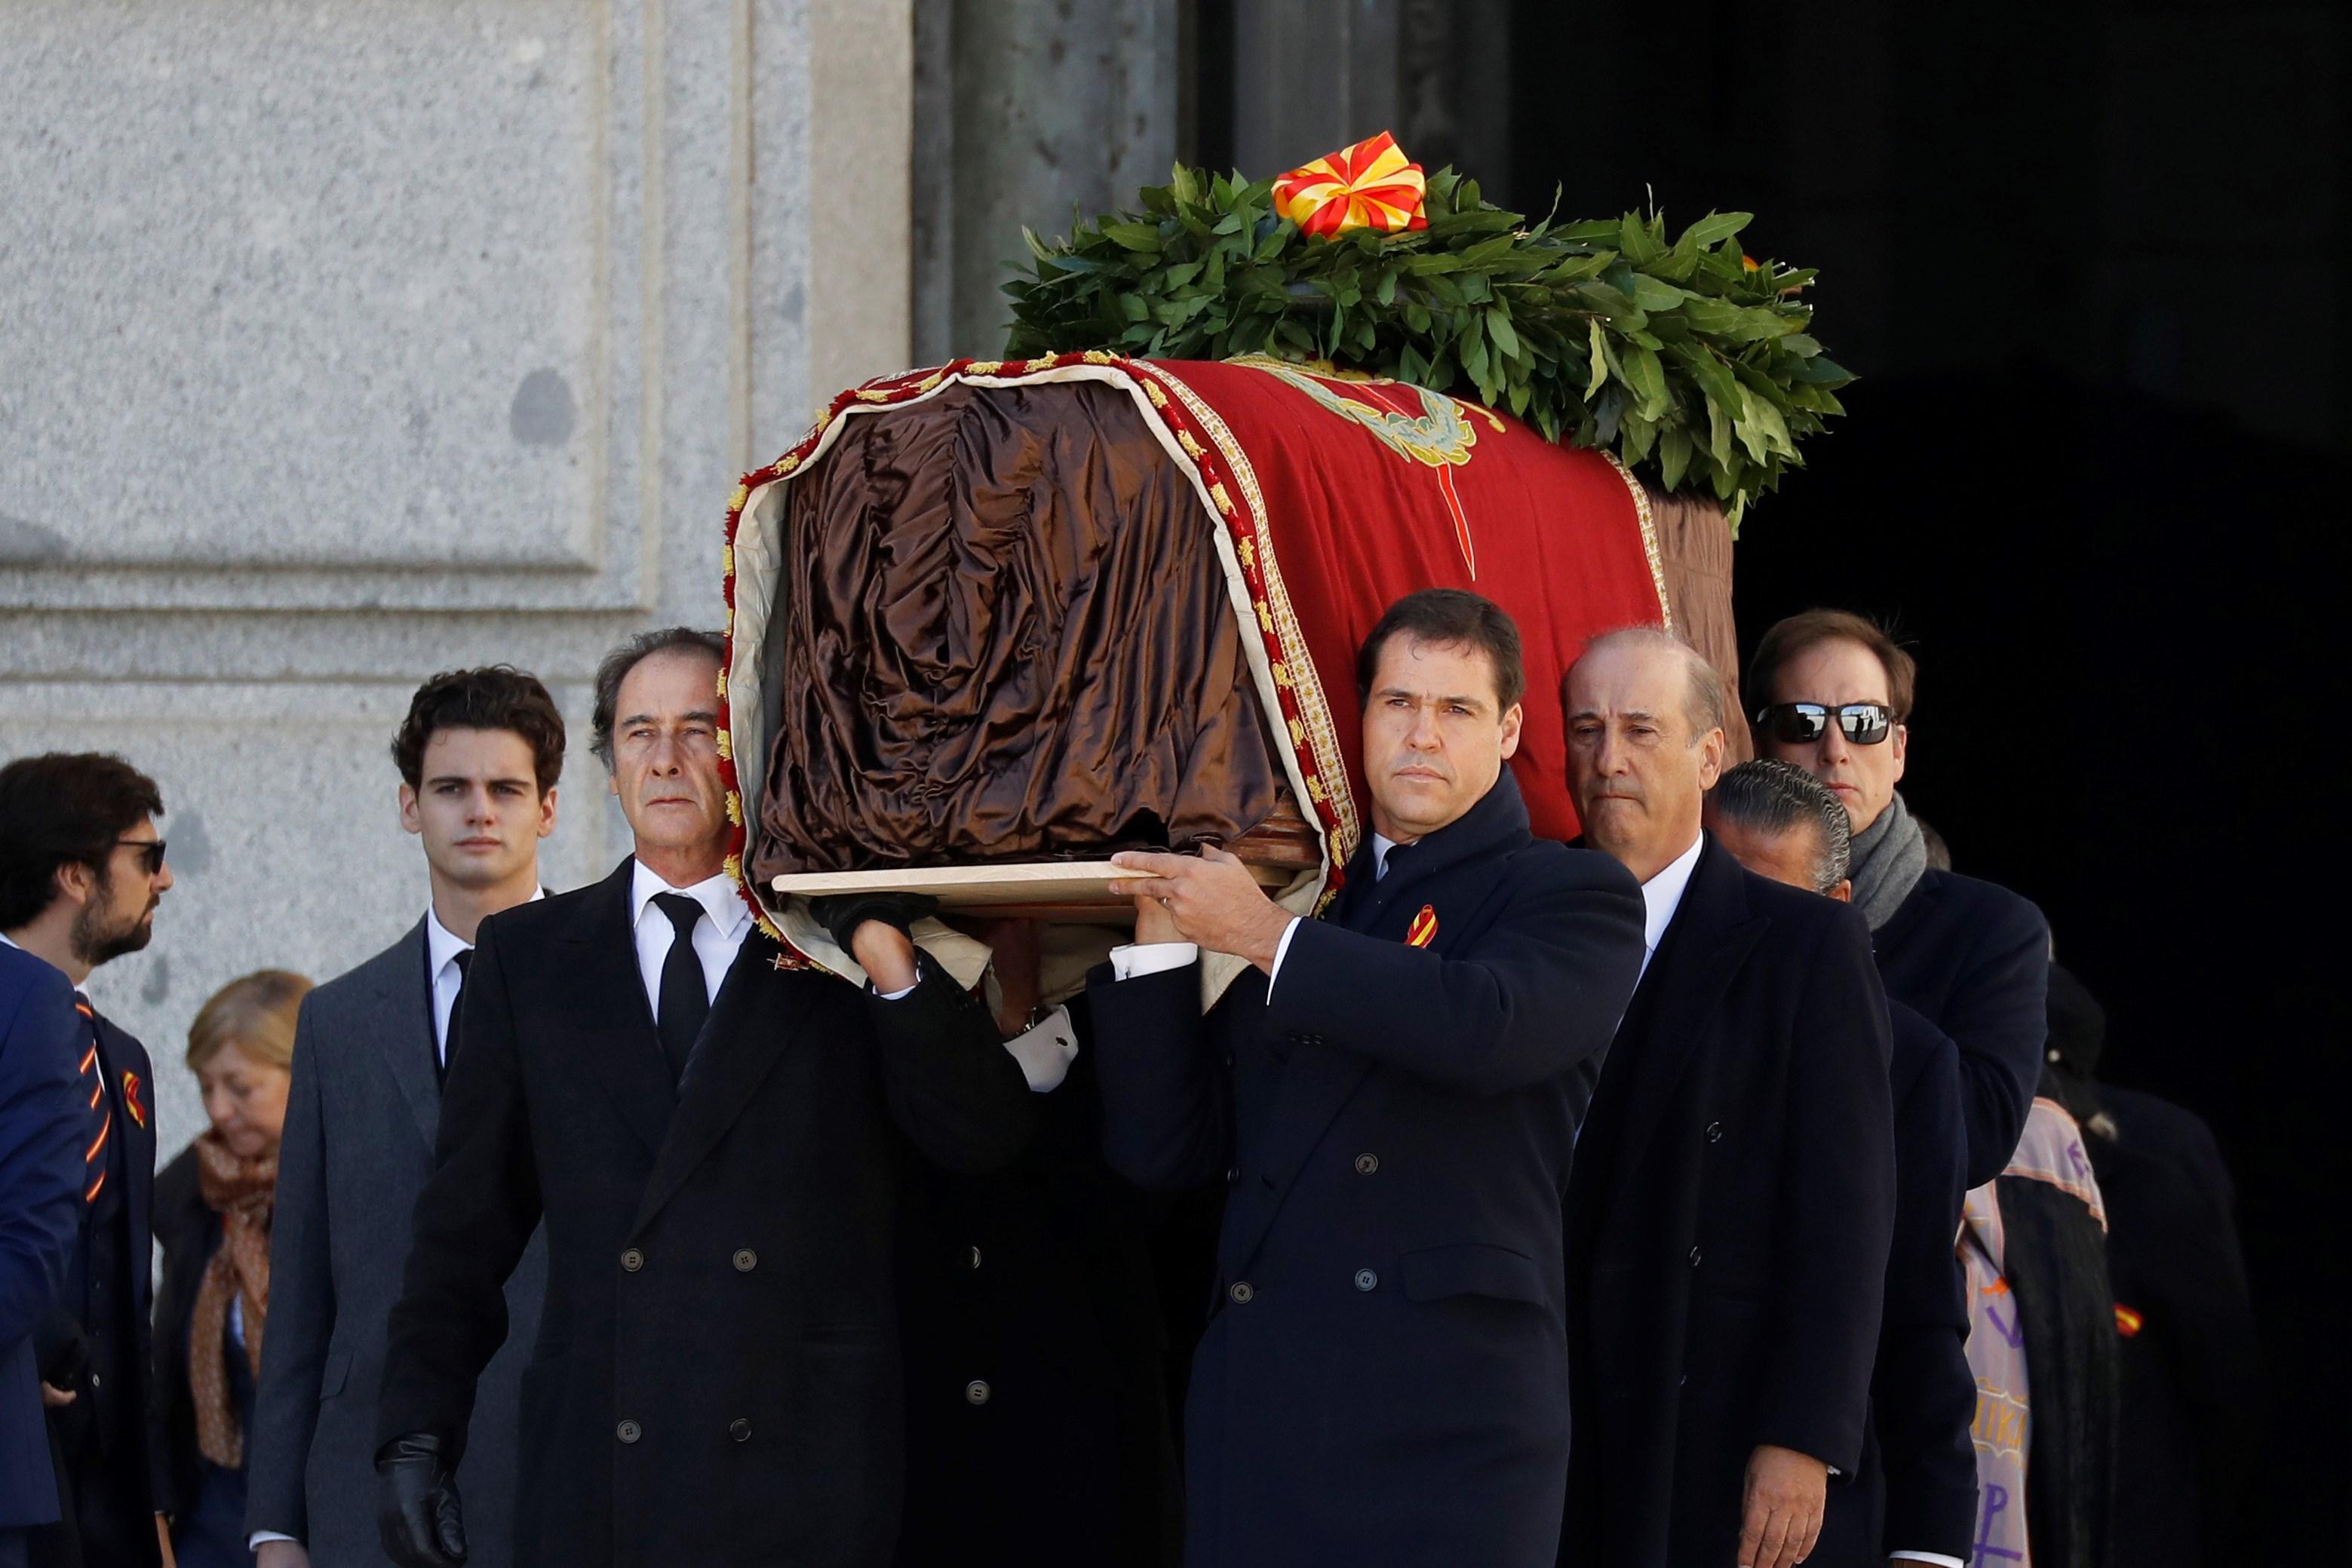 Los familiares de Francisco Franco portan el féretro con los restos mortales del dictador tras su exhumación en la basílica del Valle de los Caídos antes de su trasladado al cementerio de El Pardo-Mingorrubio para su reinhumación. EFE/Juan Carlos Hidalgo